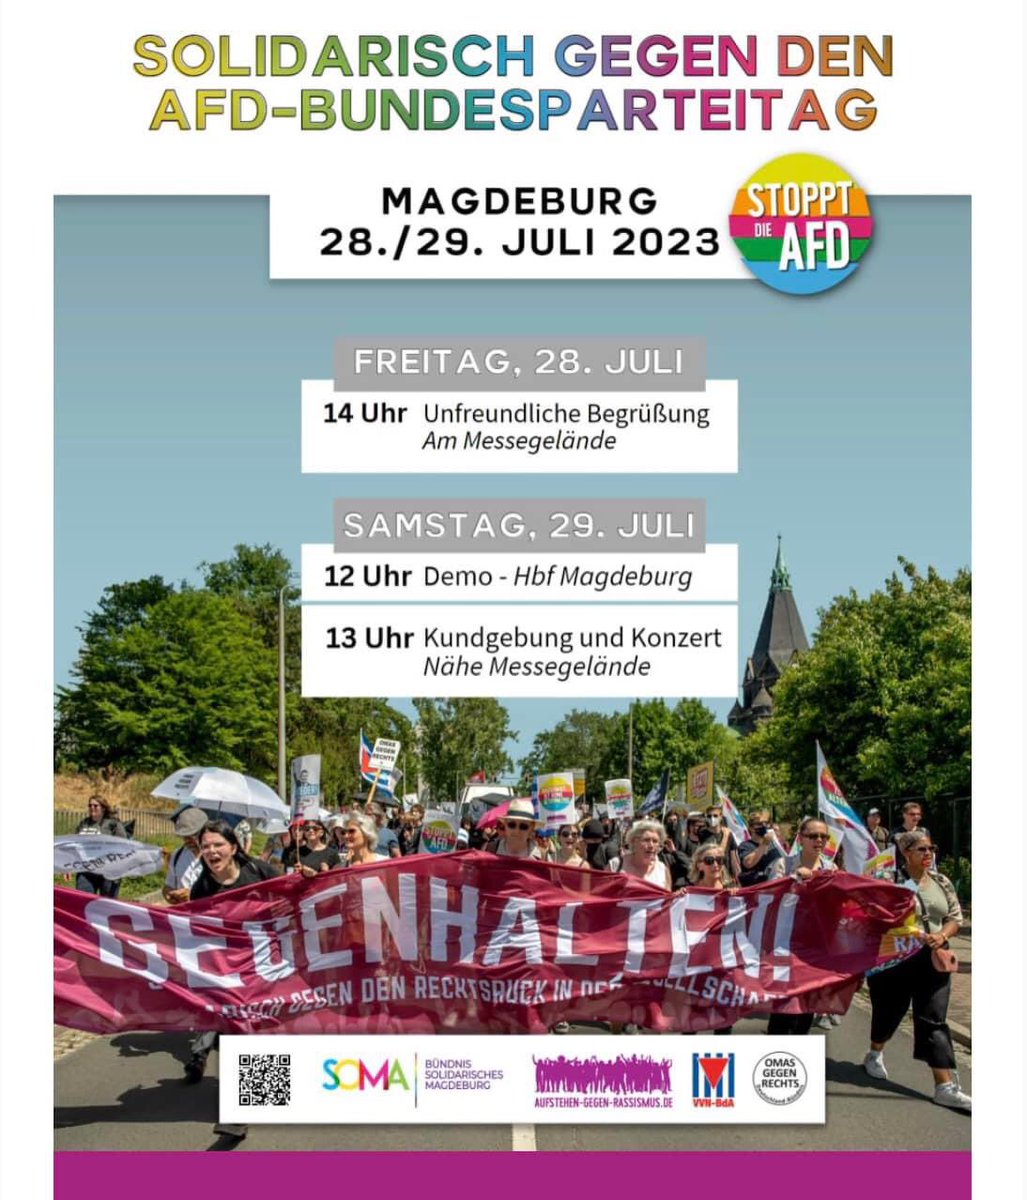 Wer kann am 29/30 Juli 2023 nach Magdeburg, zeigen wir #wirsindmehr #fckafd #KlareKantegegenRechts #Antifas #AfdistkeineAlternative Bitte Teilen! Danke❤️